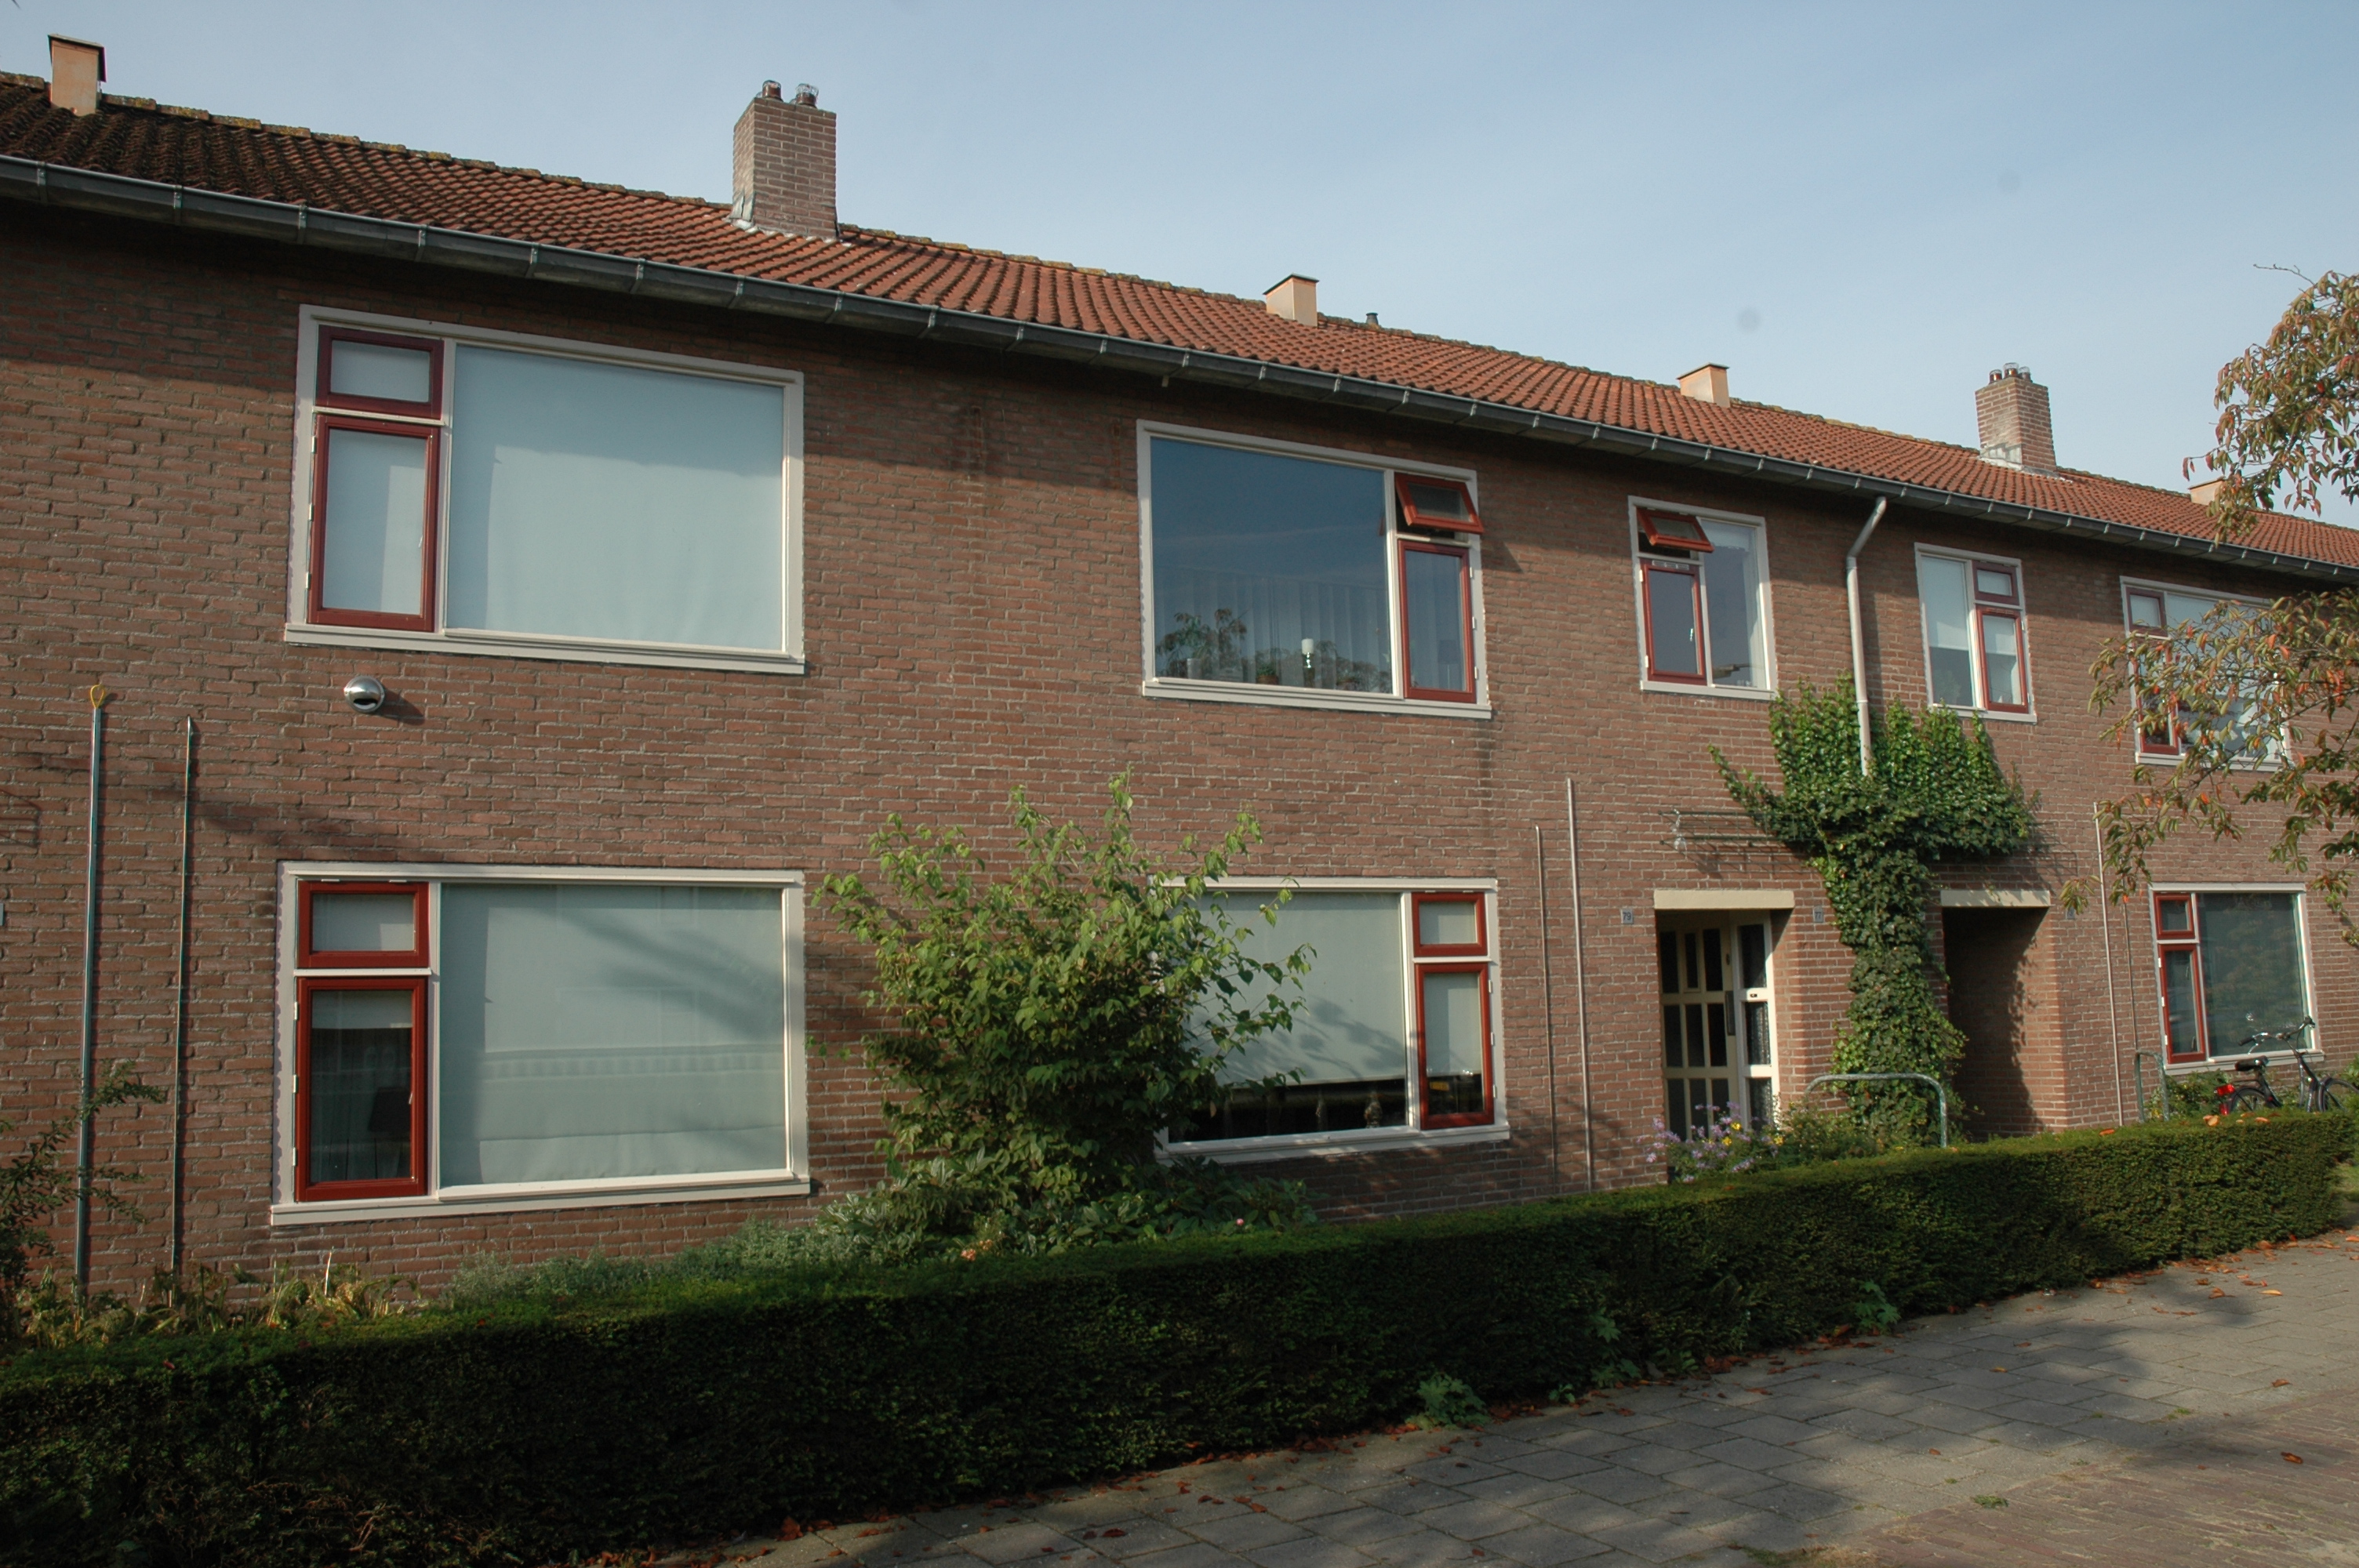 Deldensestraat 87, 7601 RW Almelo, Nederland